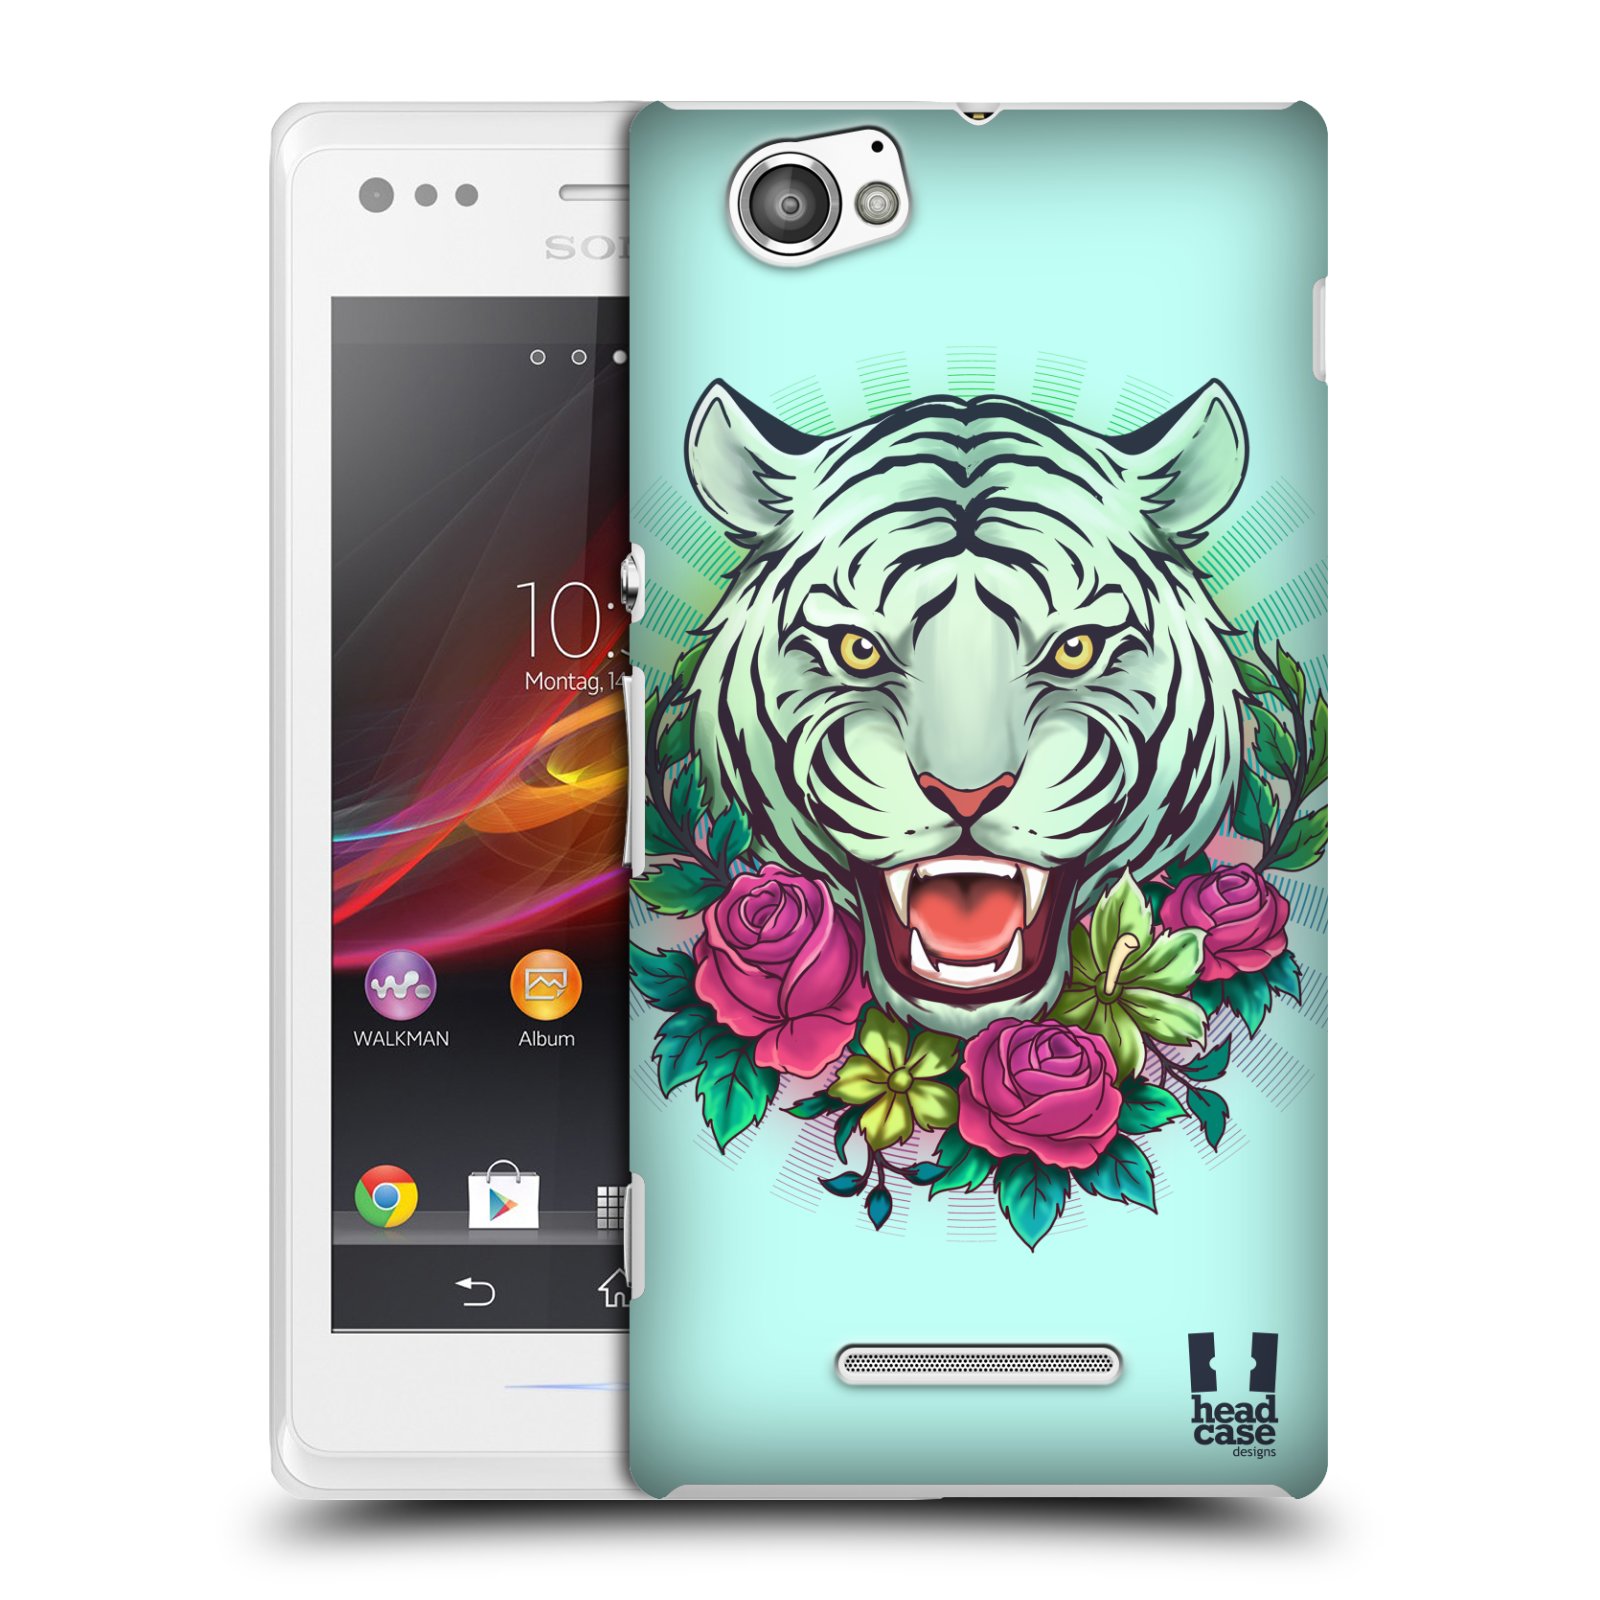 HEAD CASE plastový obal na mobil Sony Xperia M vzor Flóra a Fauna tygr